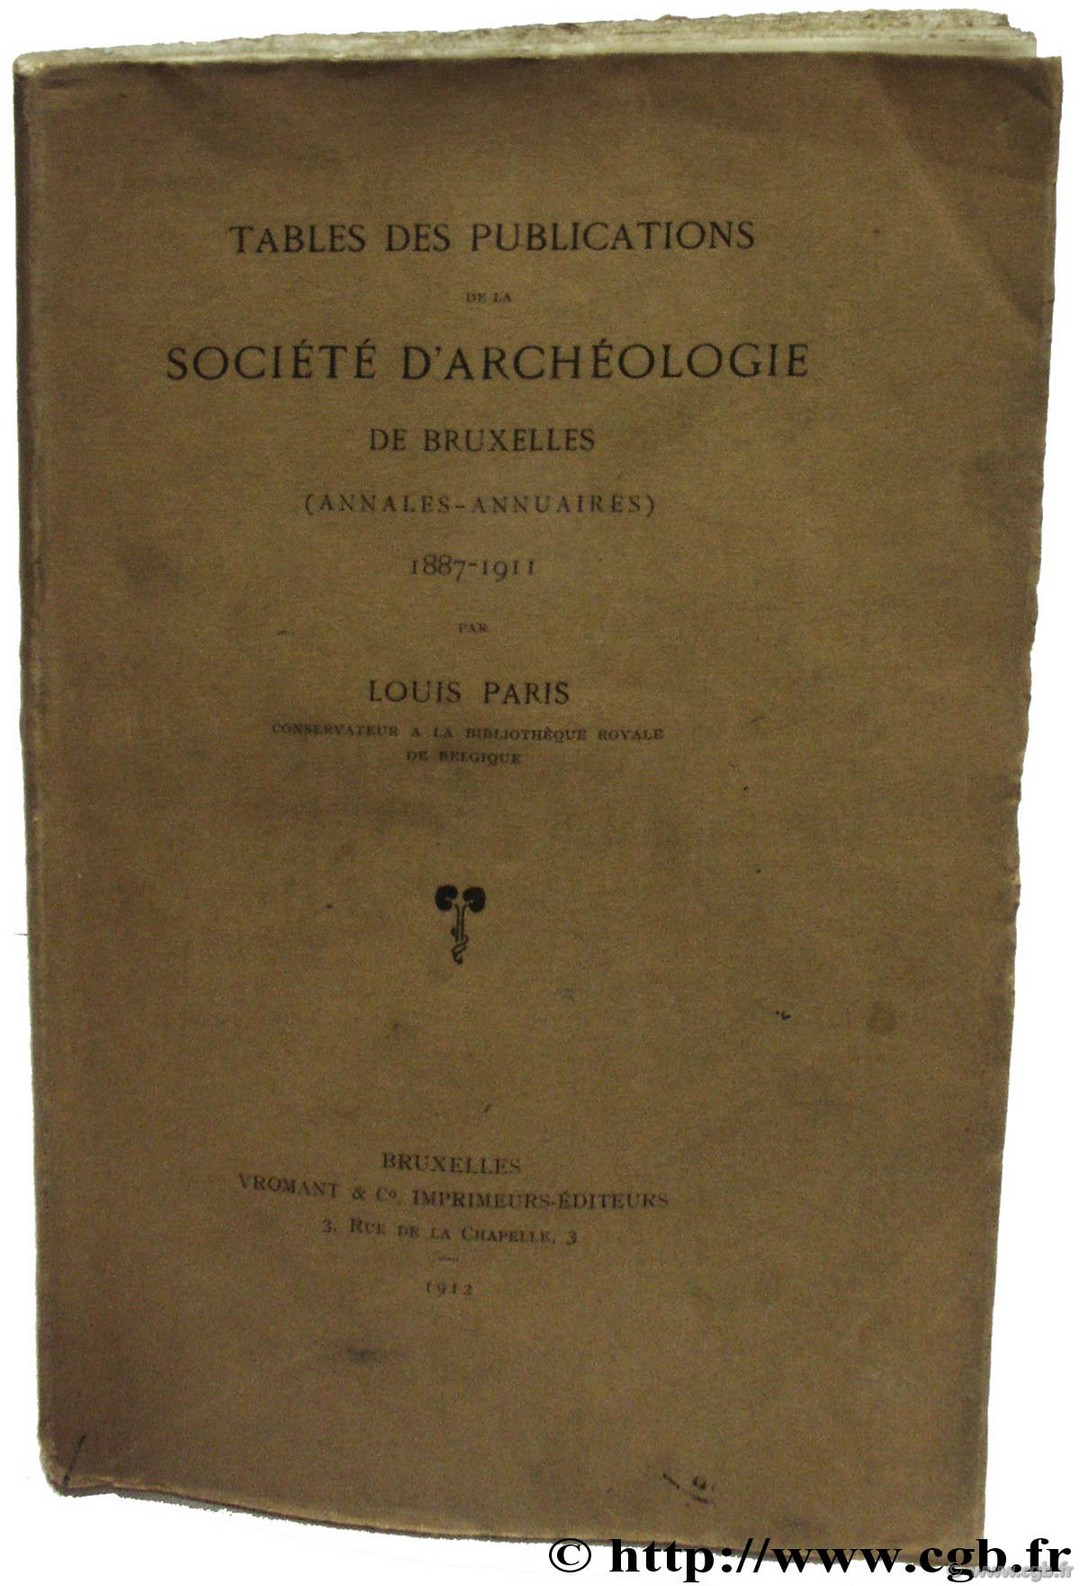 Tables des publications de la société archéologique de Bruxelles 1887-1911 